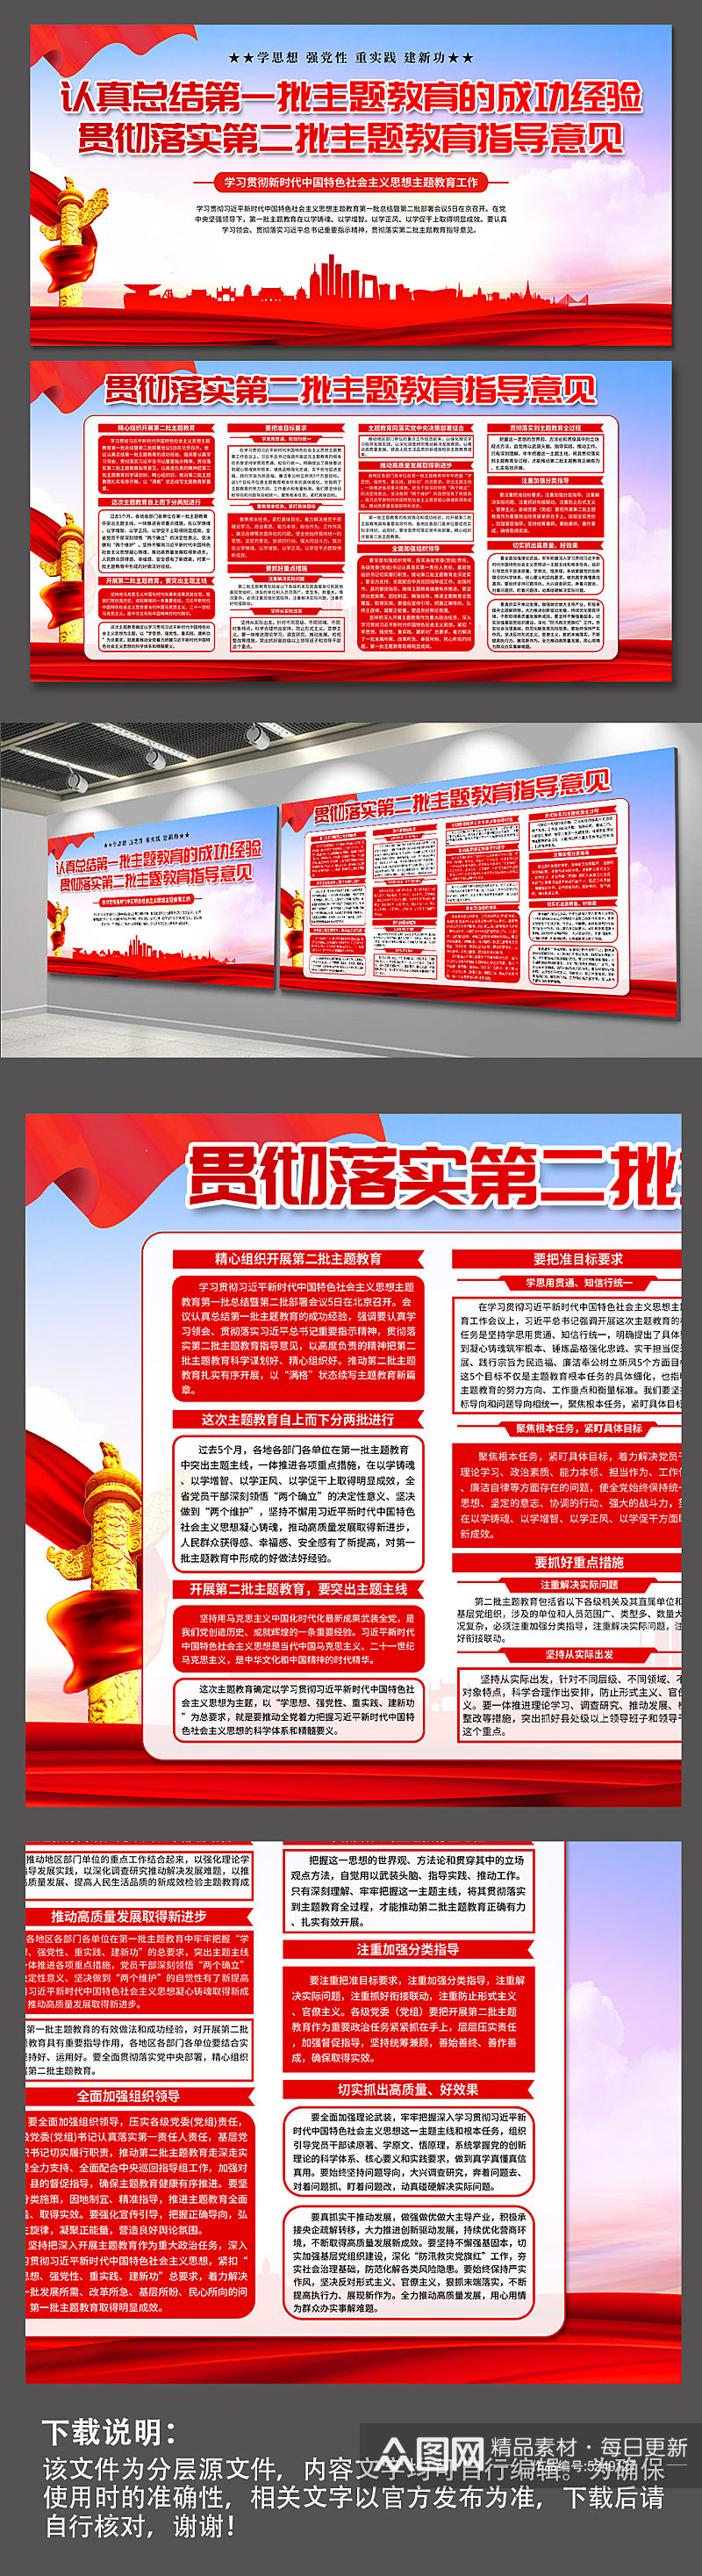 第二批中国特色社会主义思想主题教育展板素材